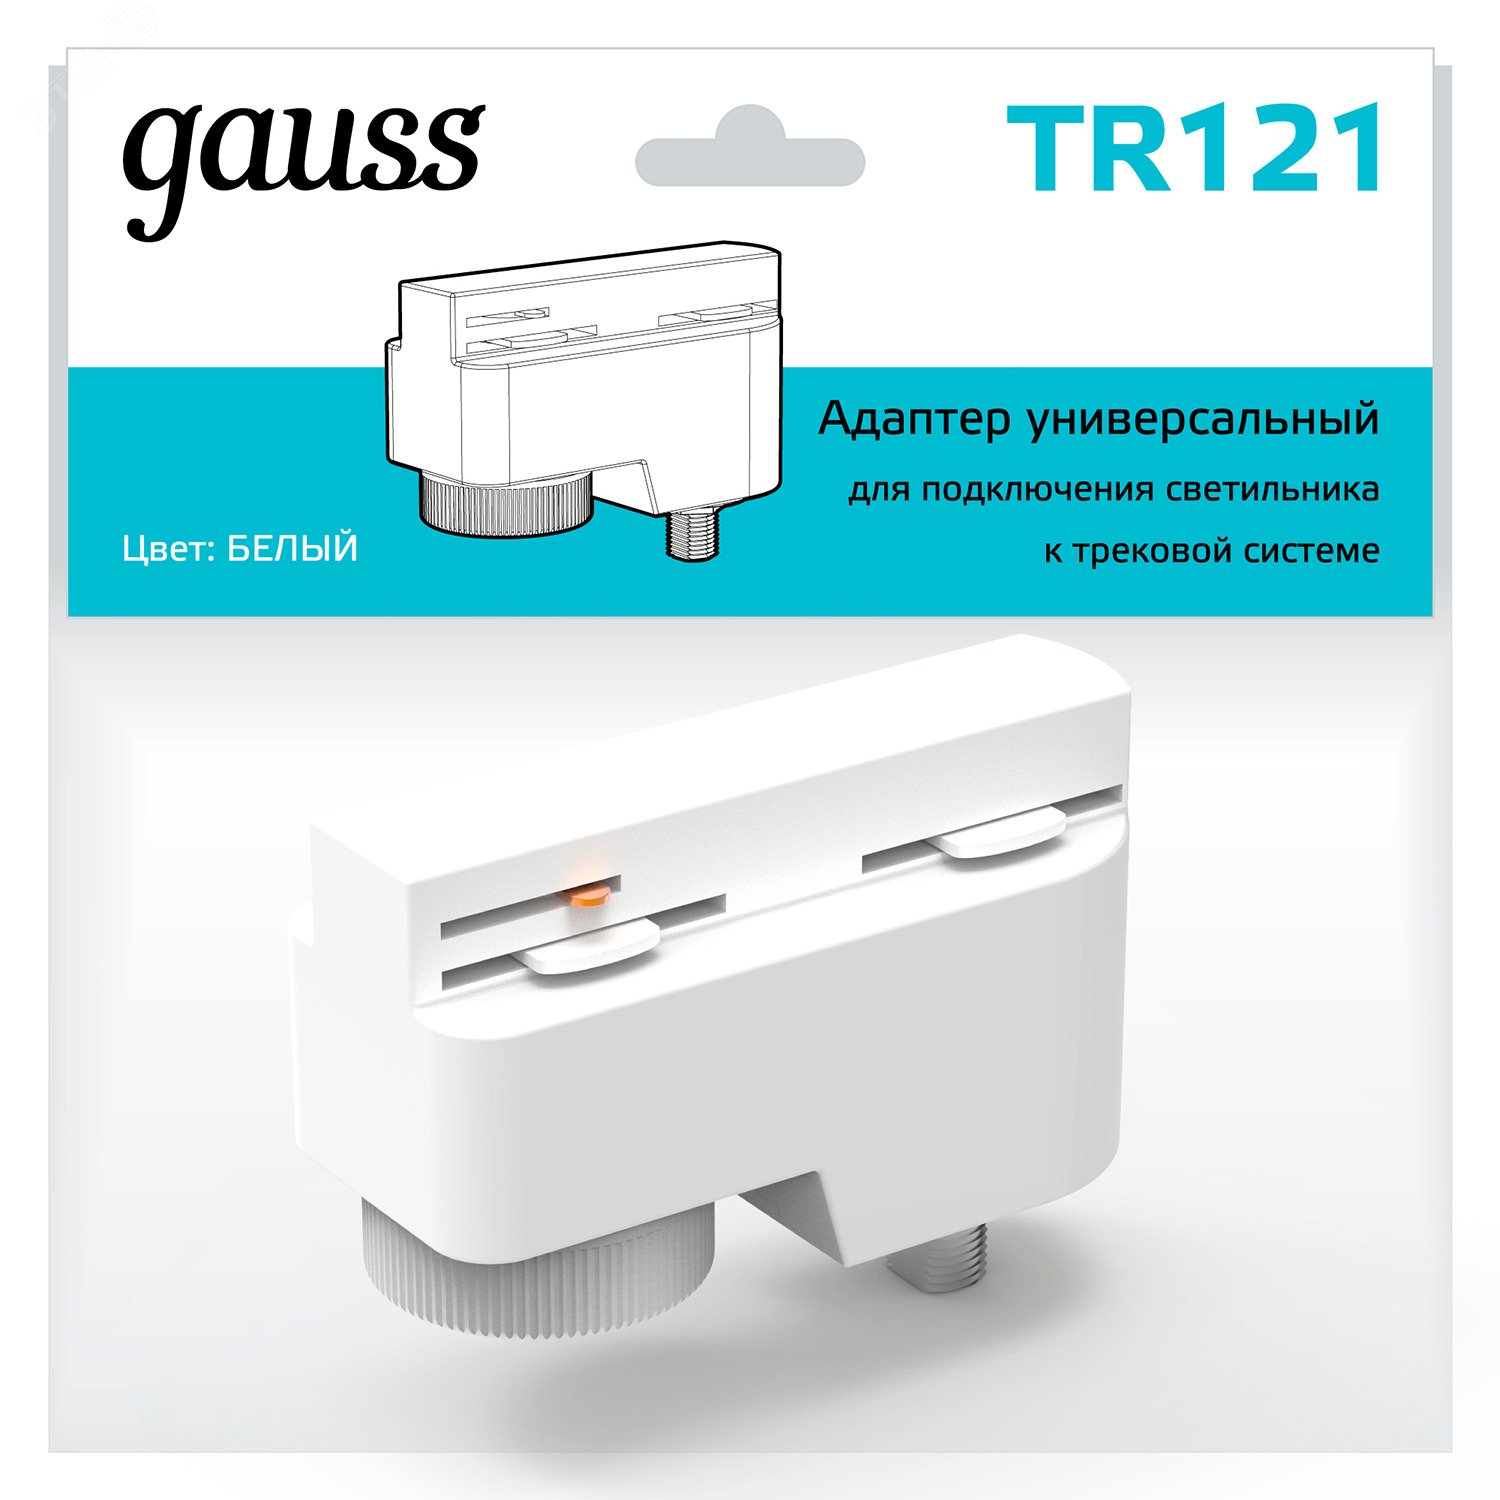 Адаптер универсальный для подключения светильника к трековой системе белый однофазный TR121 GAUSS - превью 3